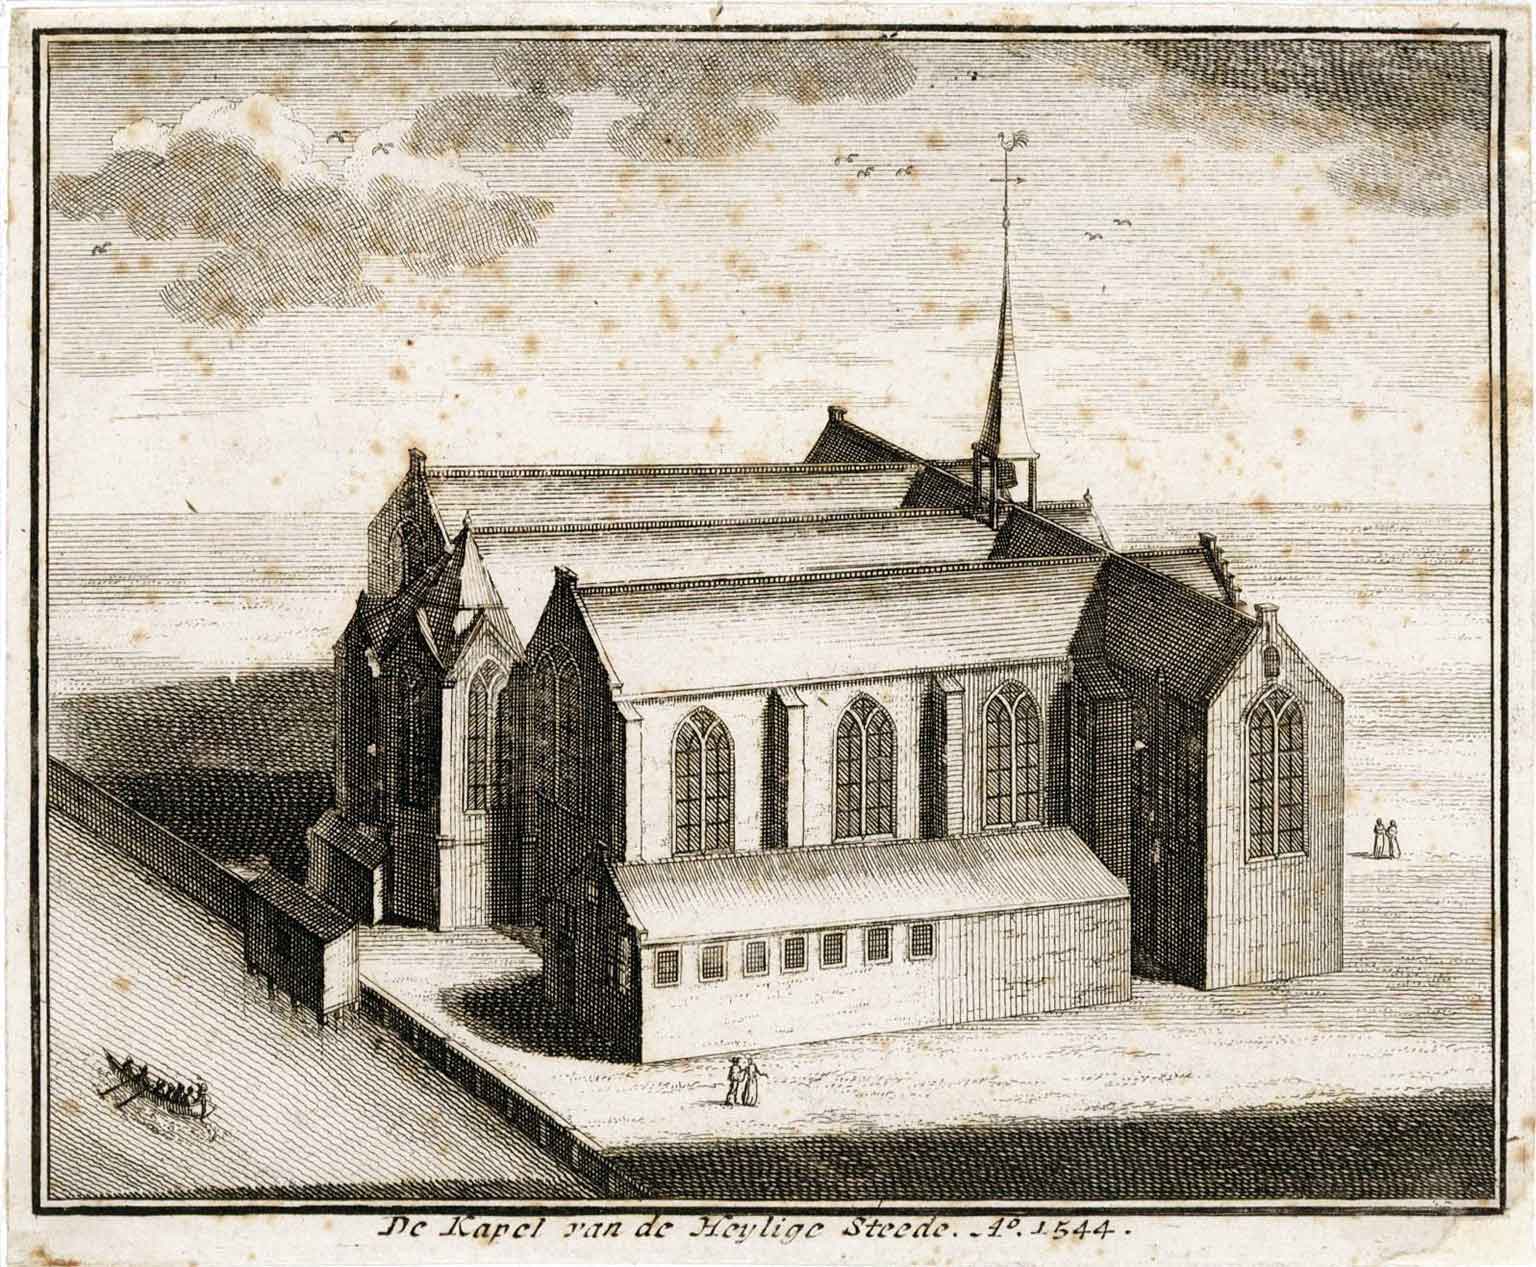 Gravure van de Kapel van de Heilige Stede in 1544, Rokin, Amsterdam